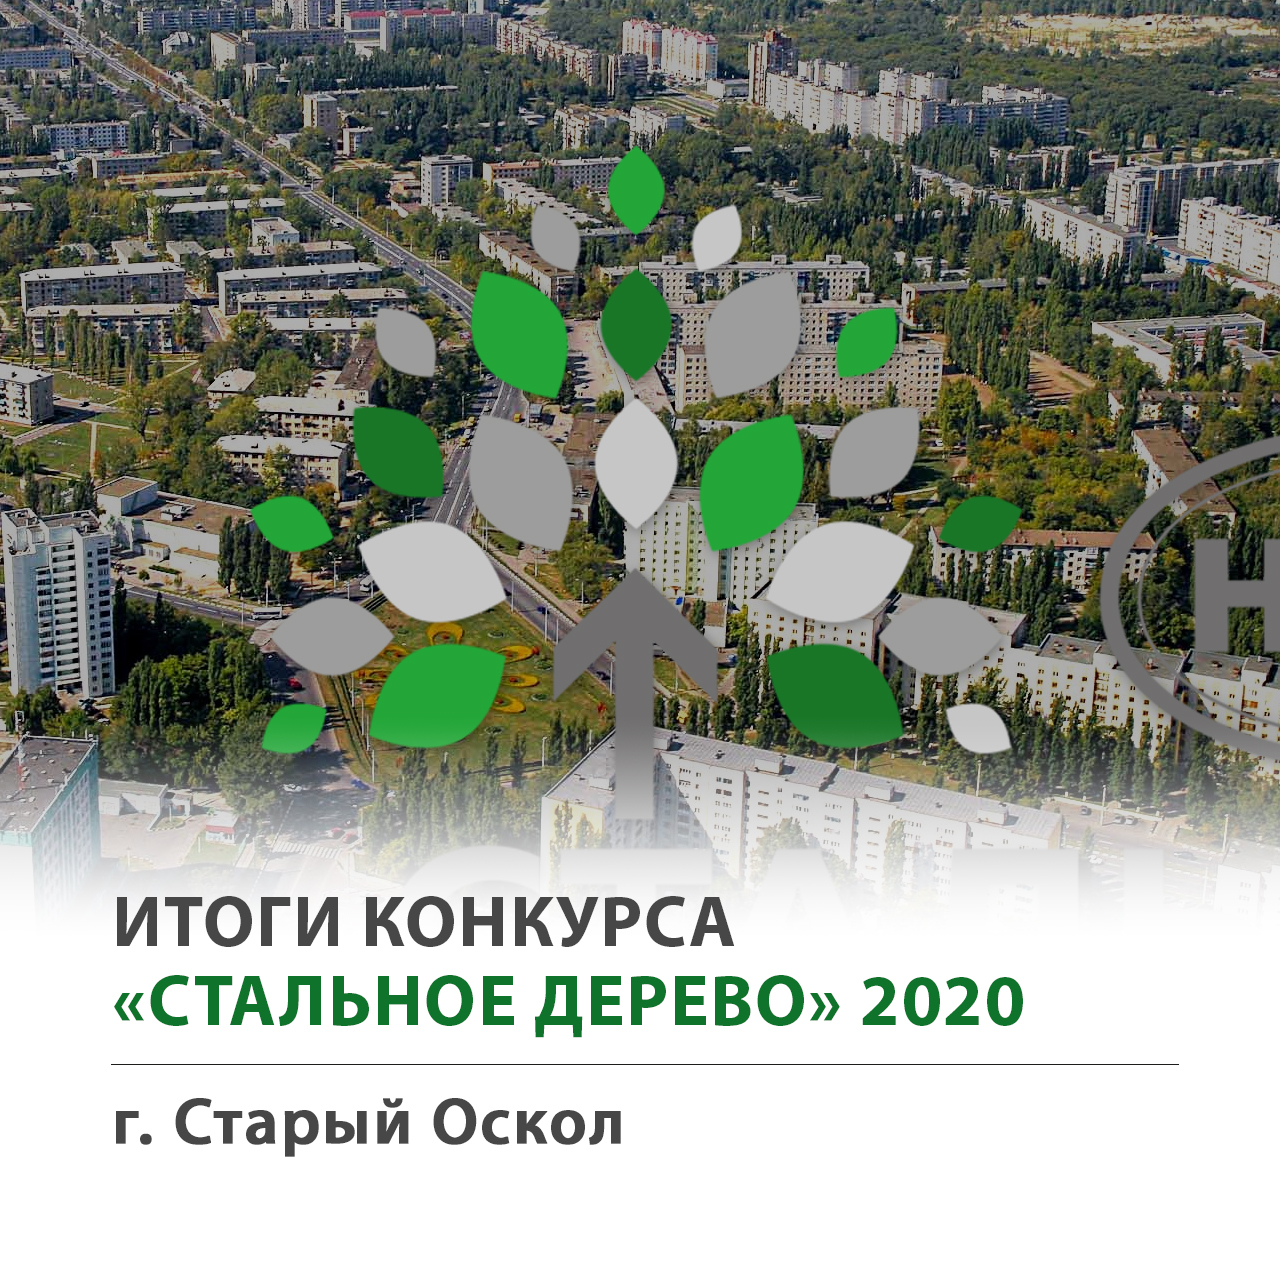 Стальное Дерево 2020 - г. Старый Оскол